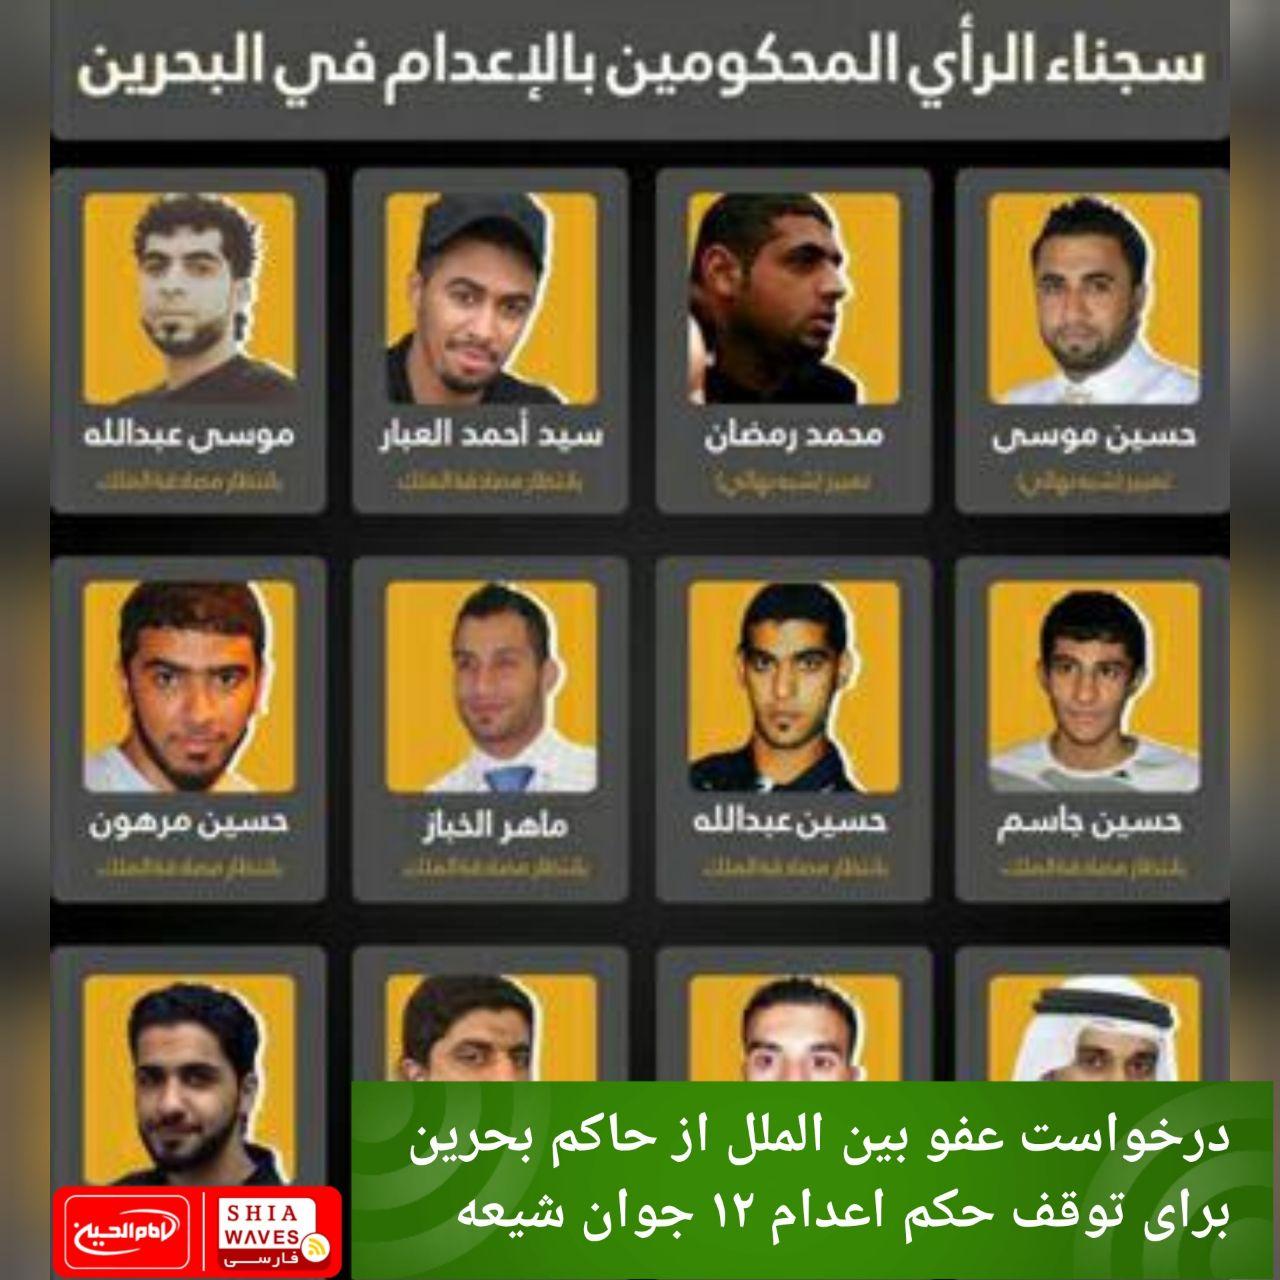 تصویر درخواست عفو بین الملل از حاکم بحرین برای توقف حکم اعدام ۱۲ جوان شیعه